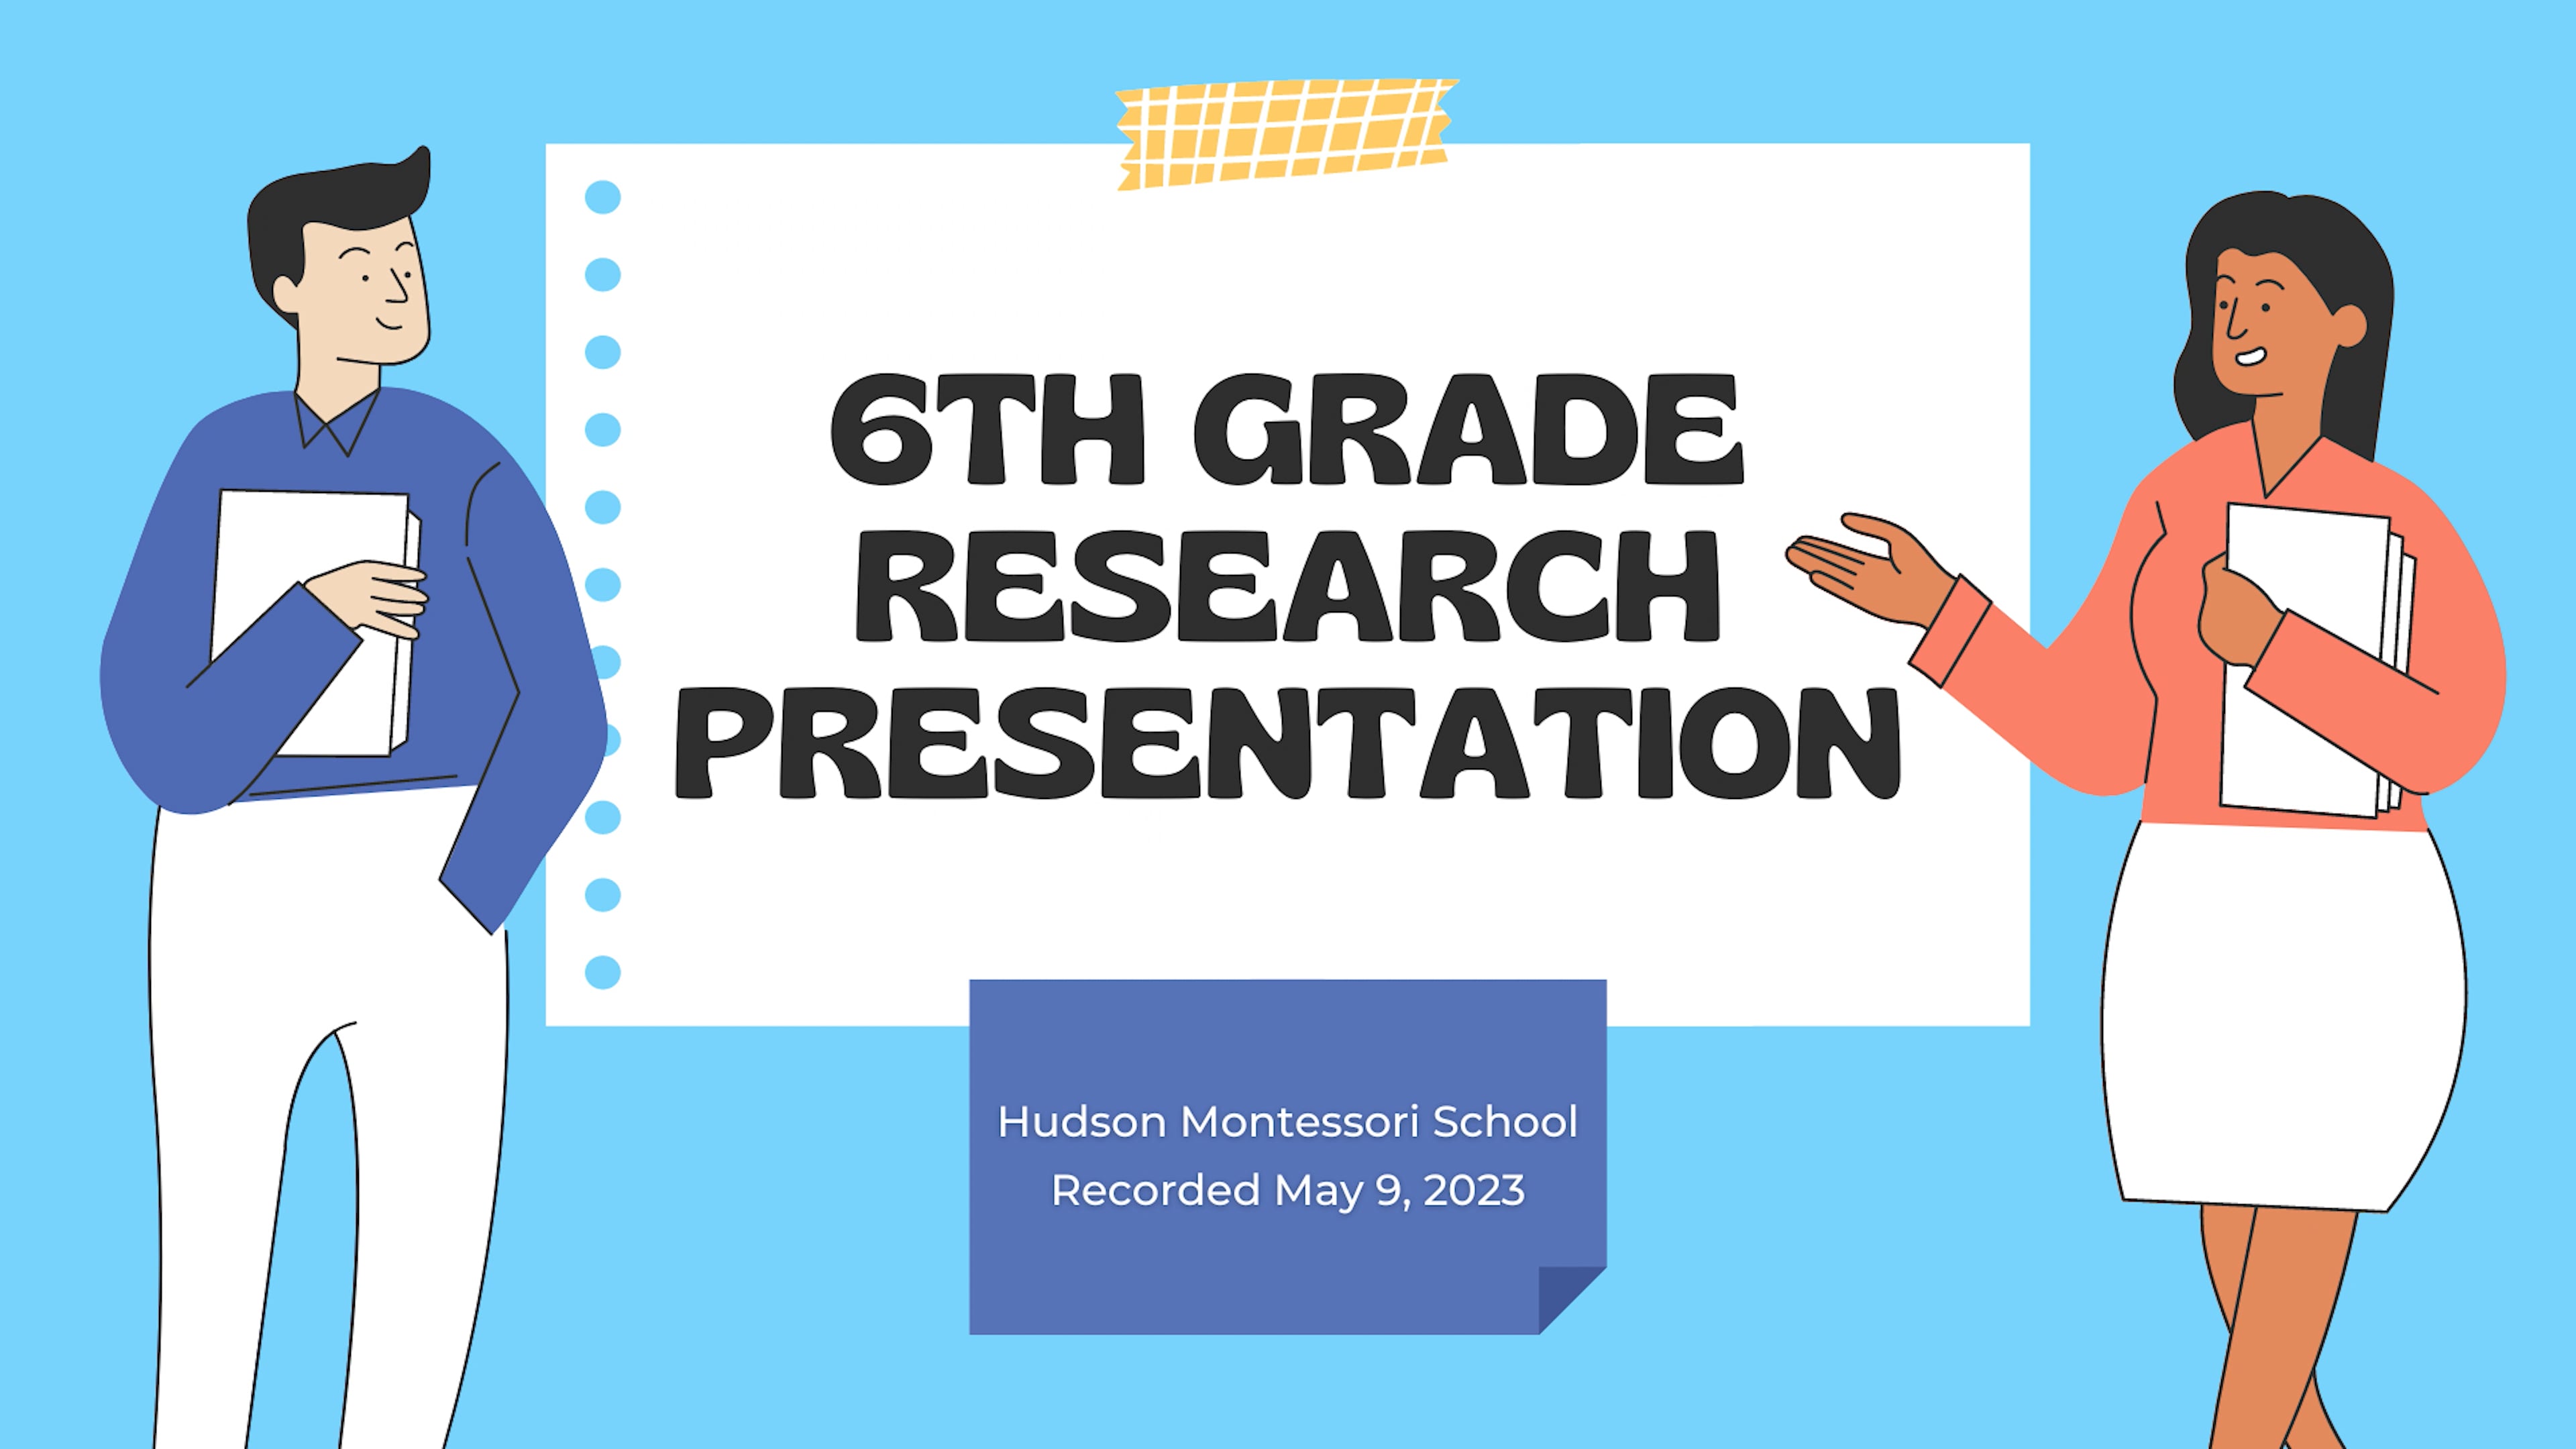 Montessori 6th Grade Research Presentation - May 9, 2023